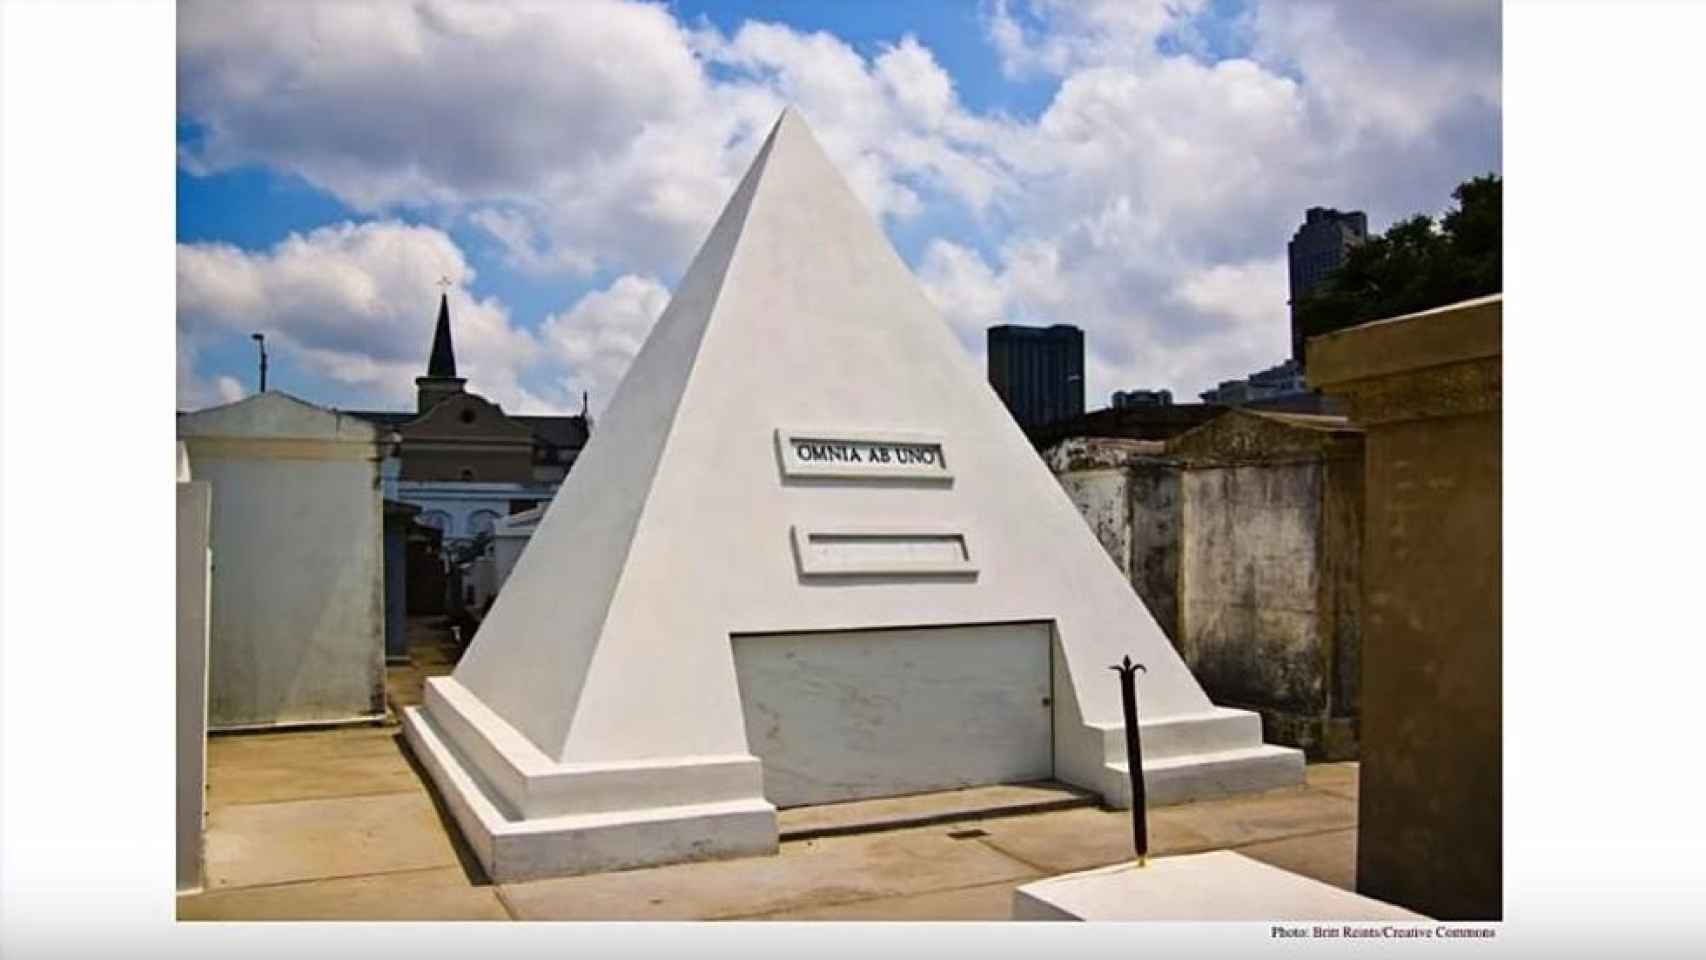 El futuro lugar para el descanso eterno de Cage, una enigmática pirámide en el cementerio de Nueva Orleans